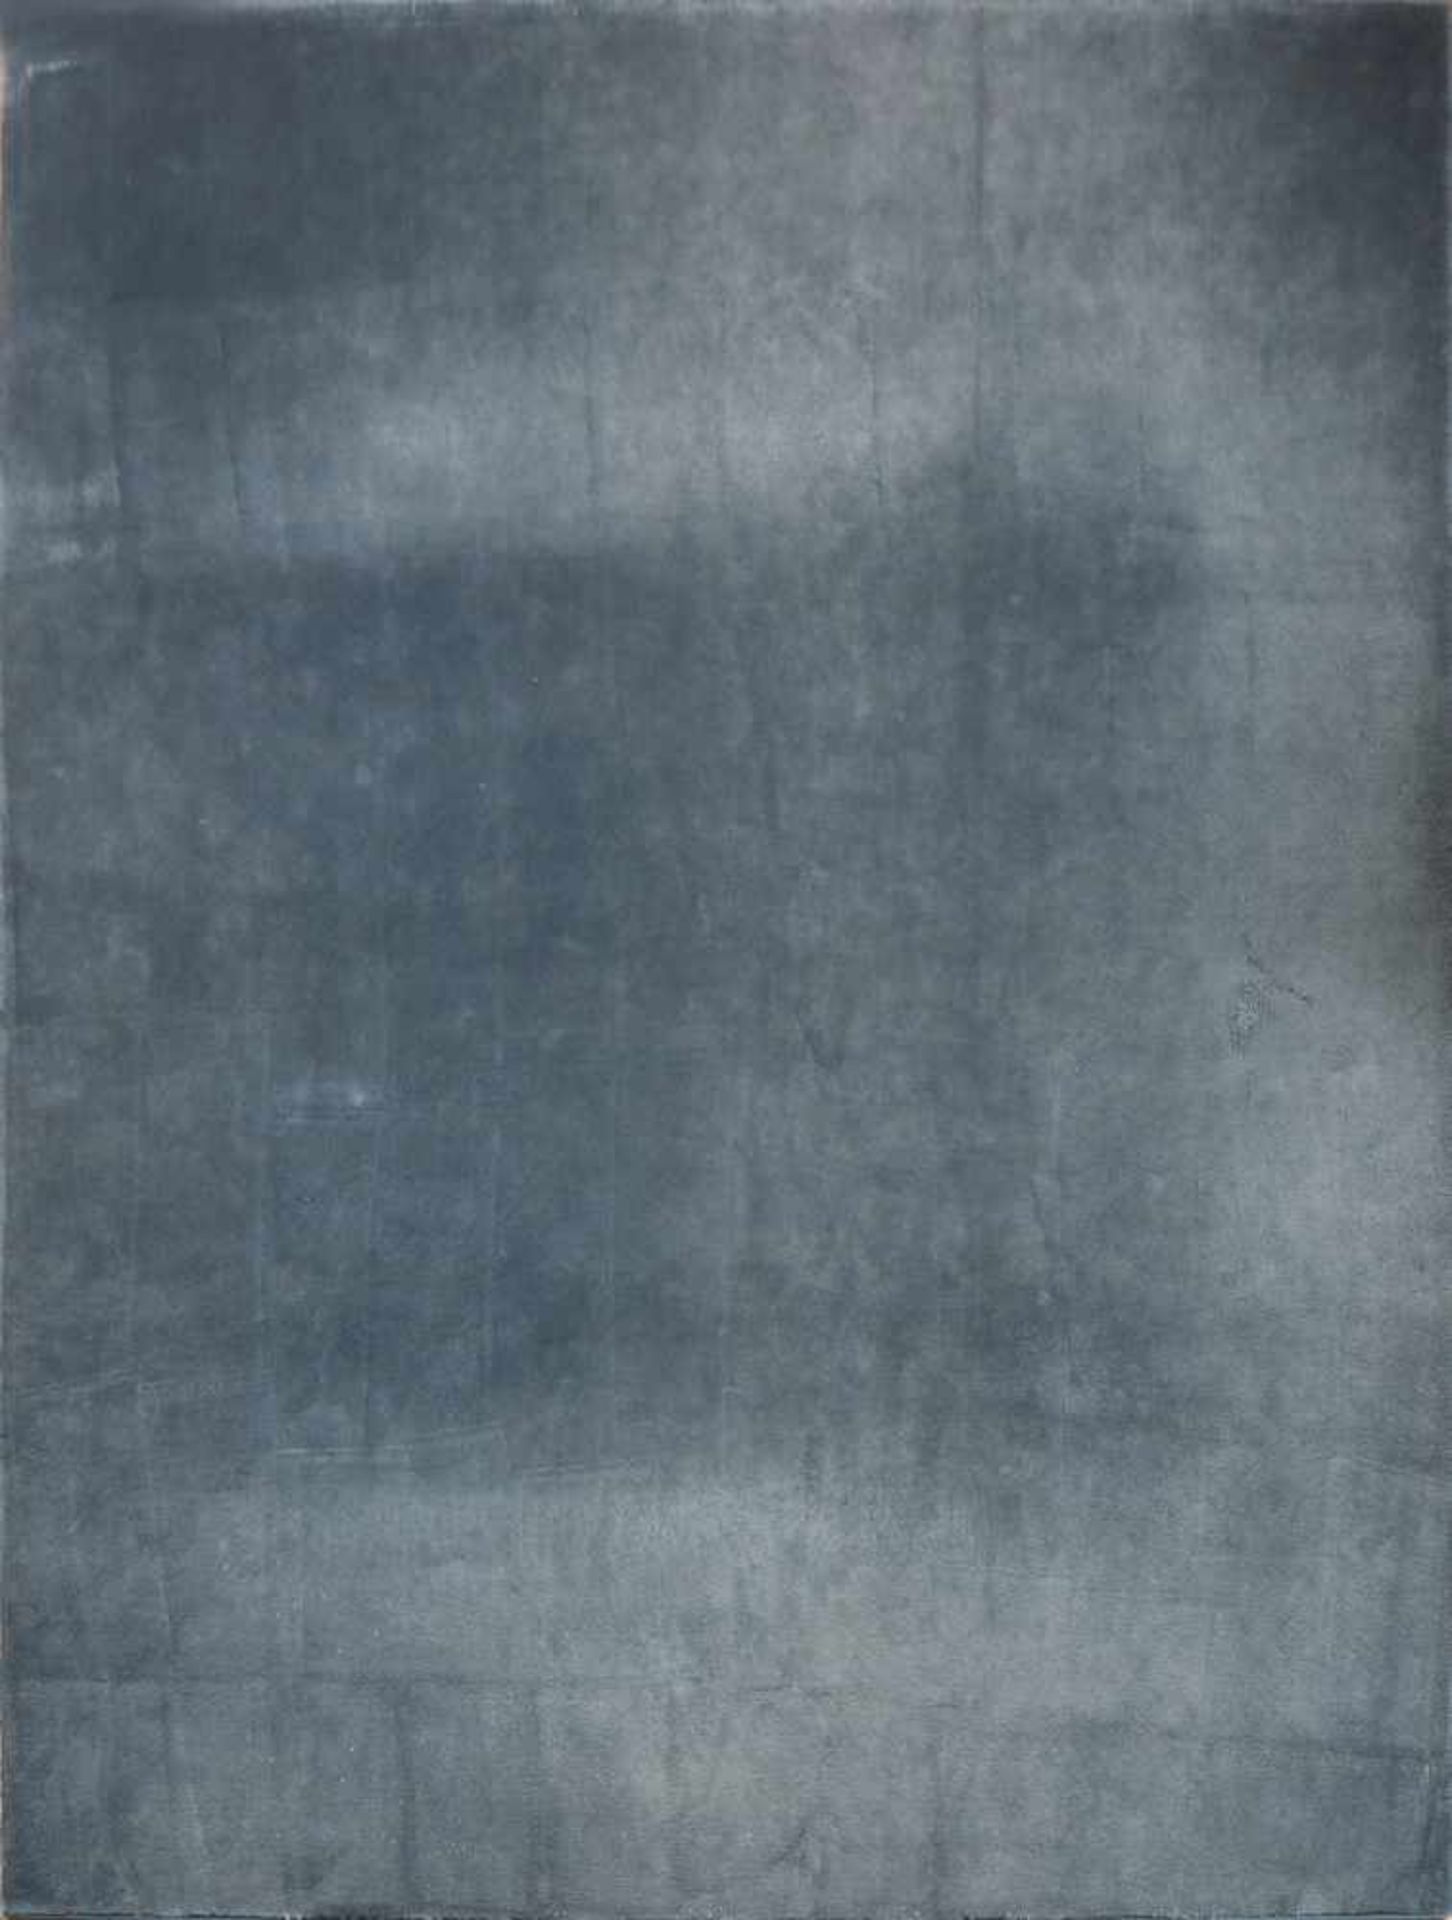 Teppichdunkelblau, hochflorig, umkettelt, gekauft bei Oliver Rosenow, ca. 300x250cm